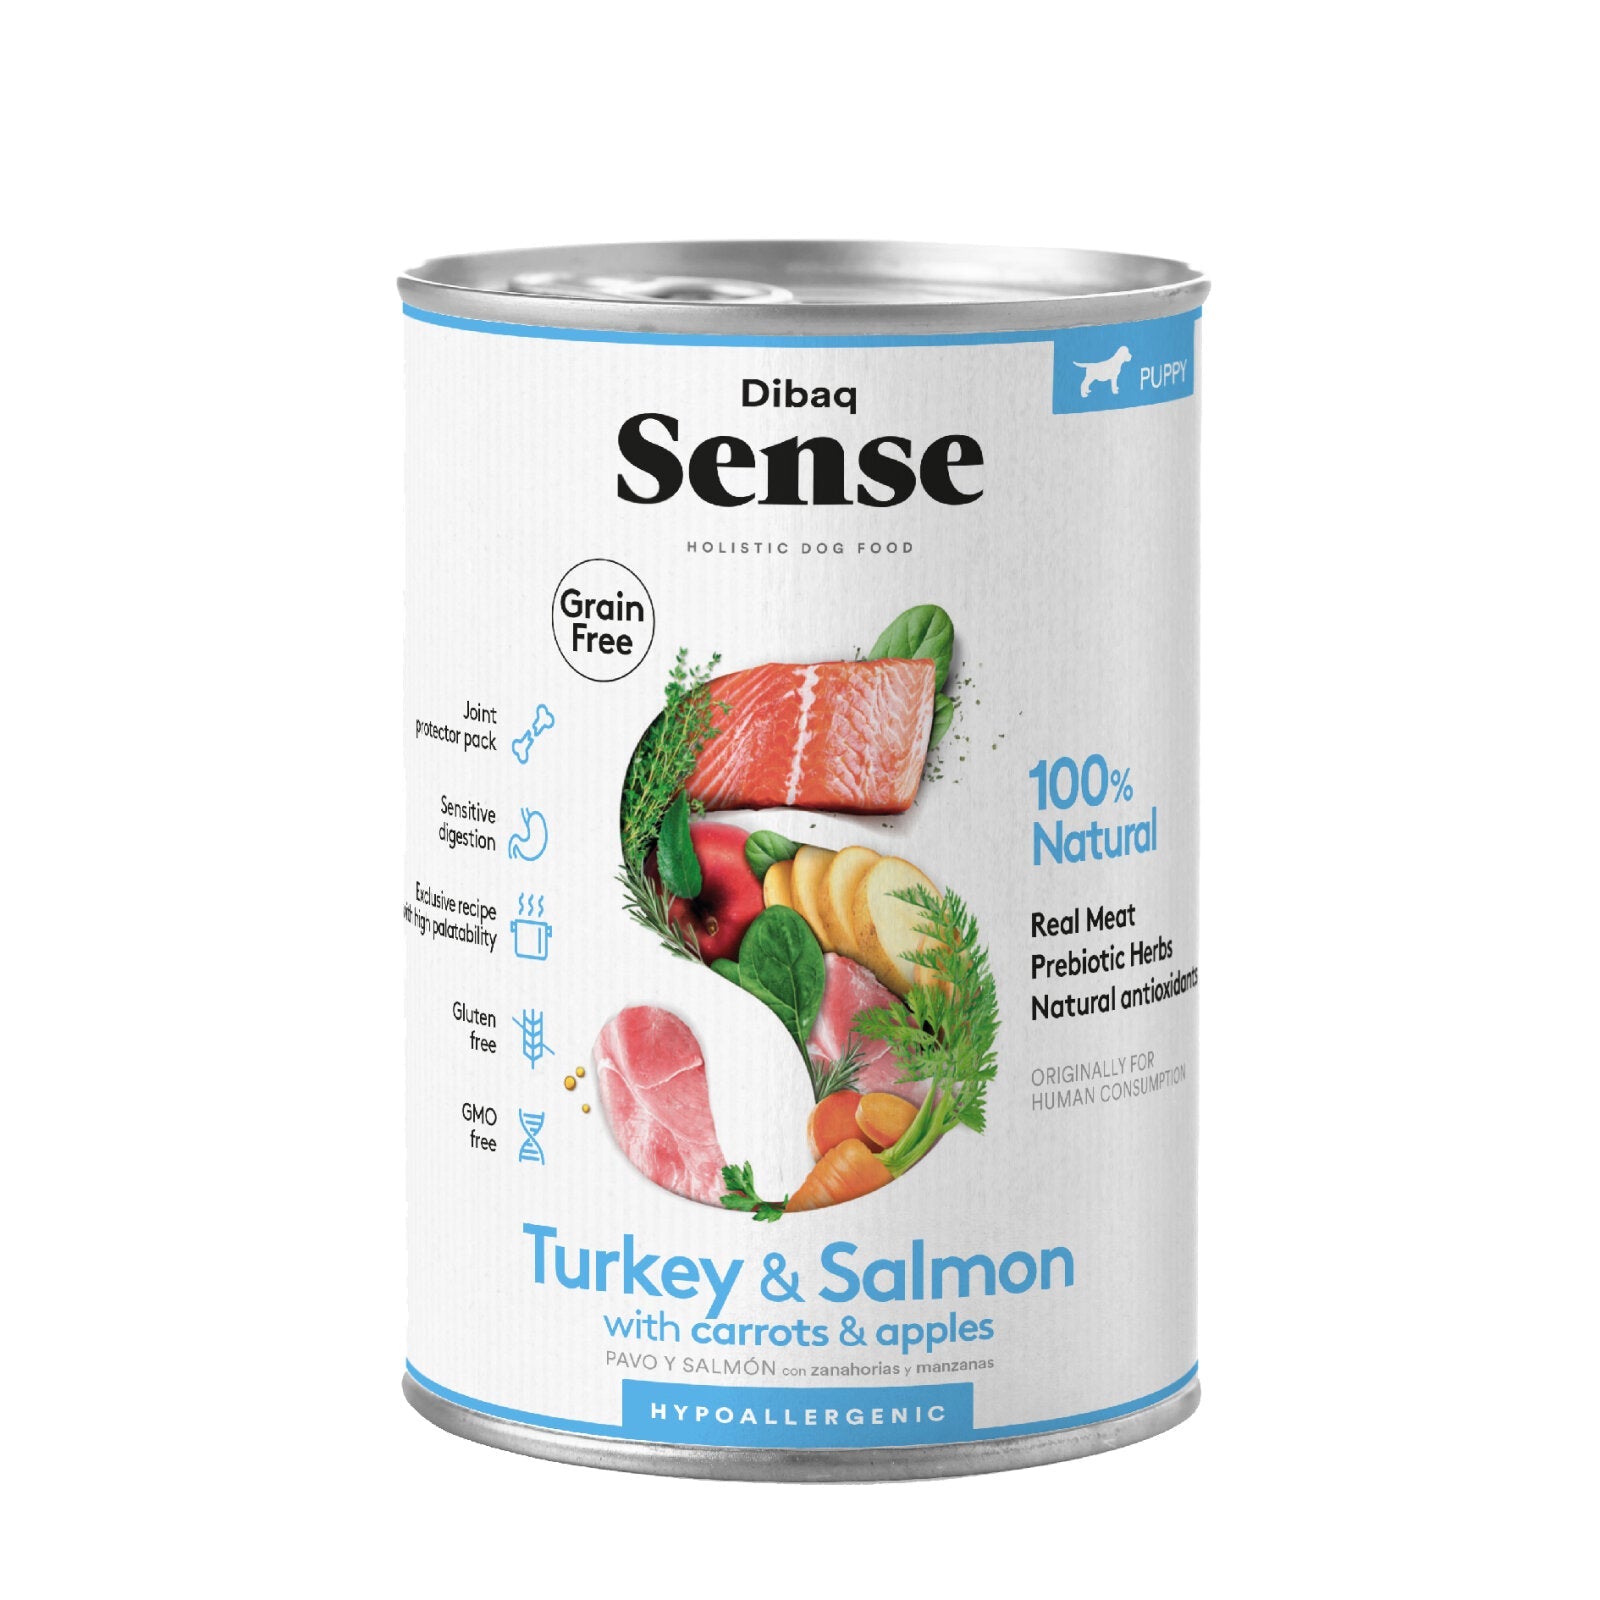 Dibaq Sense Turkey & Salmon Tin 380g - Petzzing